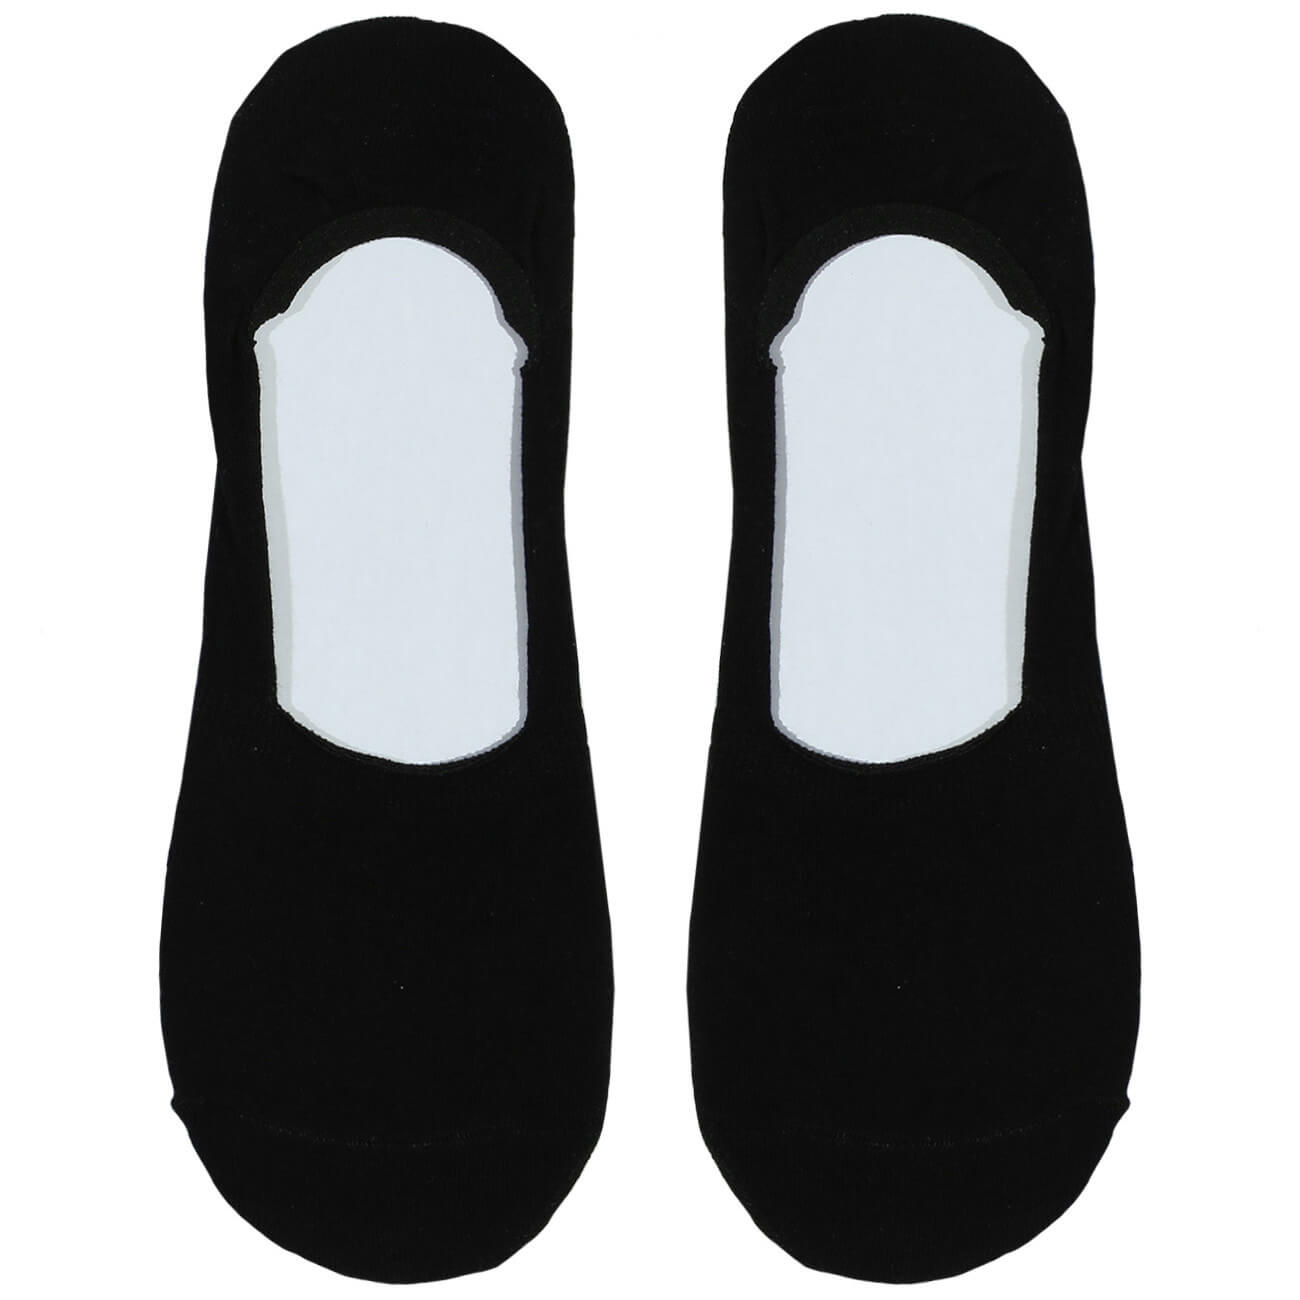 Носки-следки мужские, р. 39-42, хлопок/полиэстер, черные, Basic мужские носки chobot